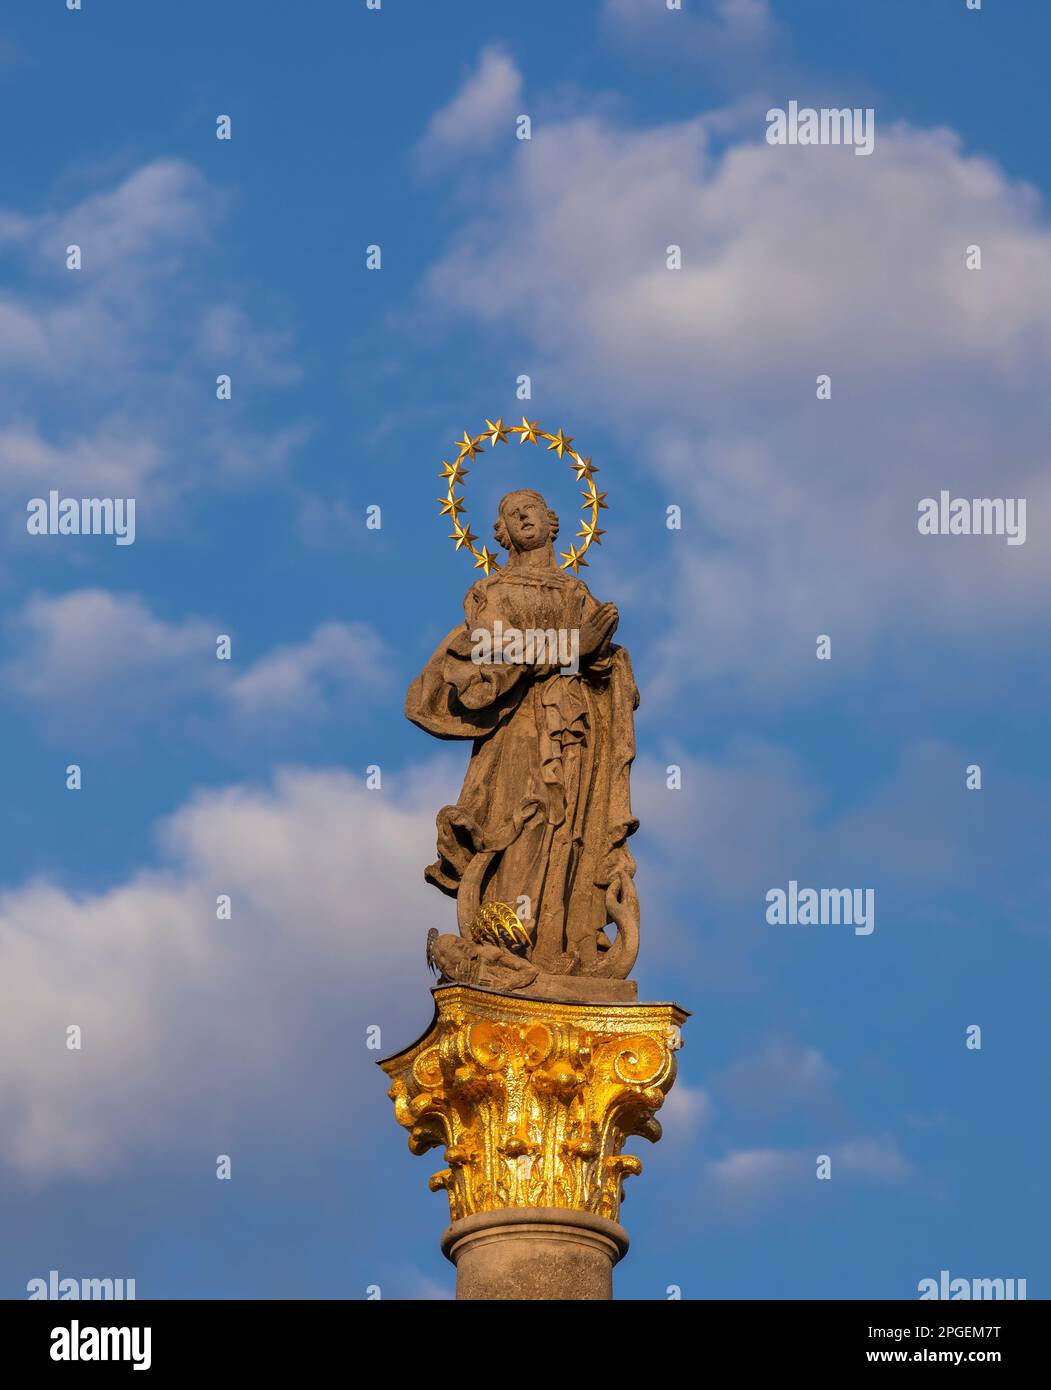 STRIBRO, TSCHECHISCHE REPUBLIK, EUROPA - Mariensäule, Statue der Jungfrau Maria, auf dem Masarykovo-Platz im Stadtzentrum von Stribro. Stockfoto